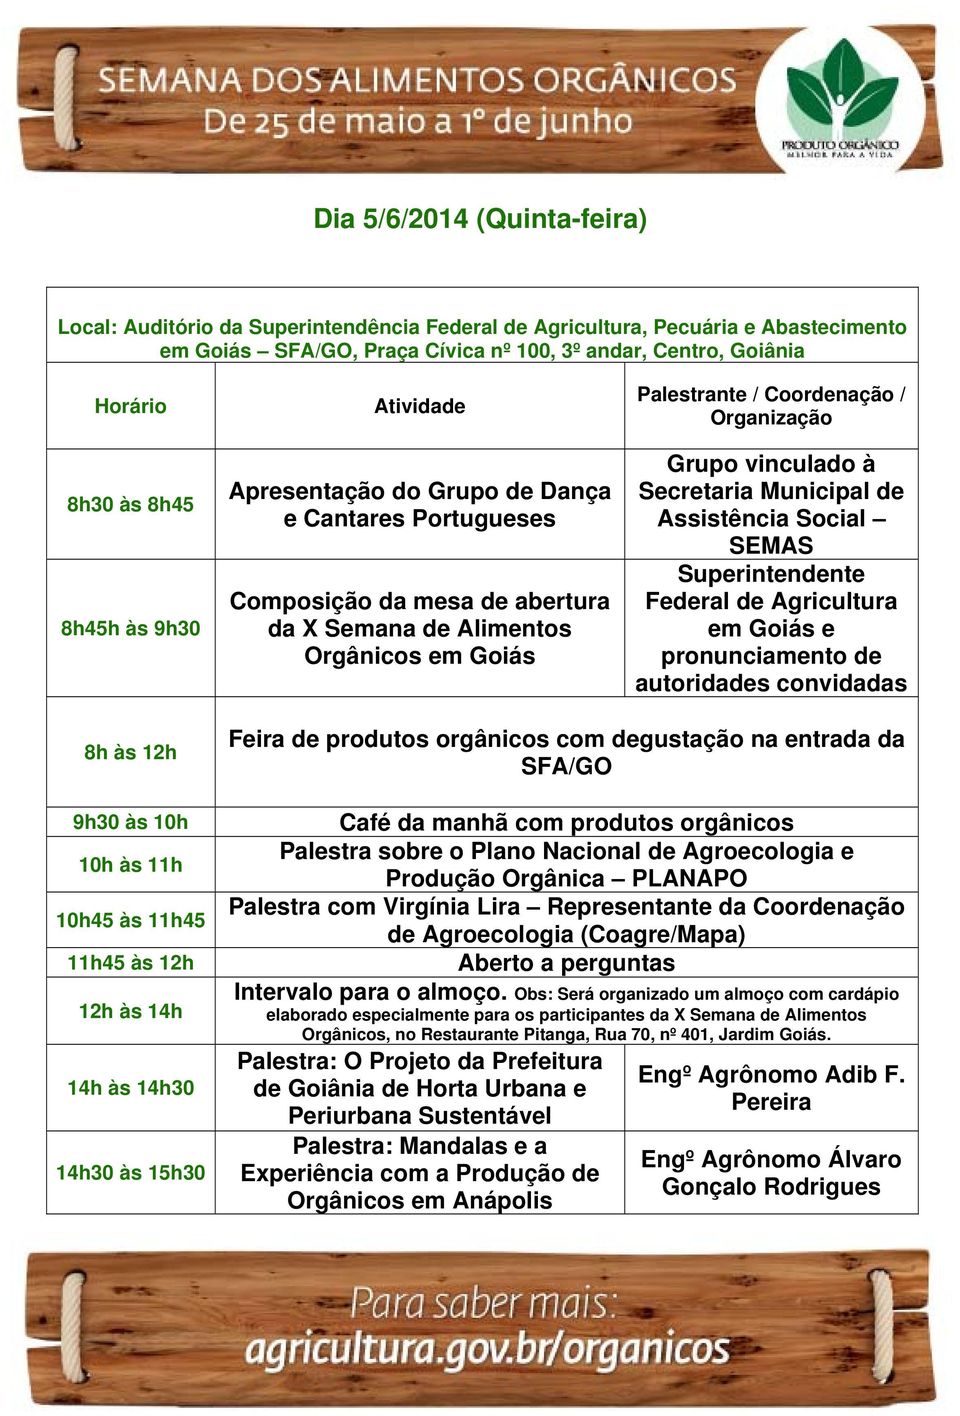 SEMAS Superintendente Federal de Agricultura em Goiás e pronunciamento de autoridades convidadas 9h30 às 10h 10h às 11h 10h45 às 11h45 11h45 às 12h 12h às 14h 14h às 14h30 14h30 às 15h30 na entrada